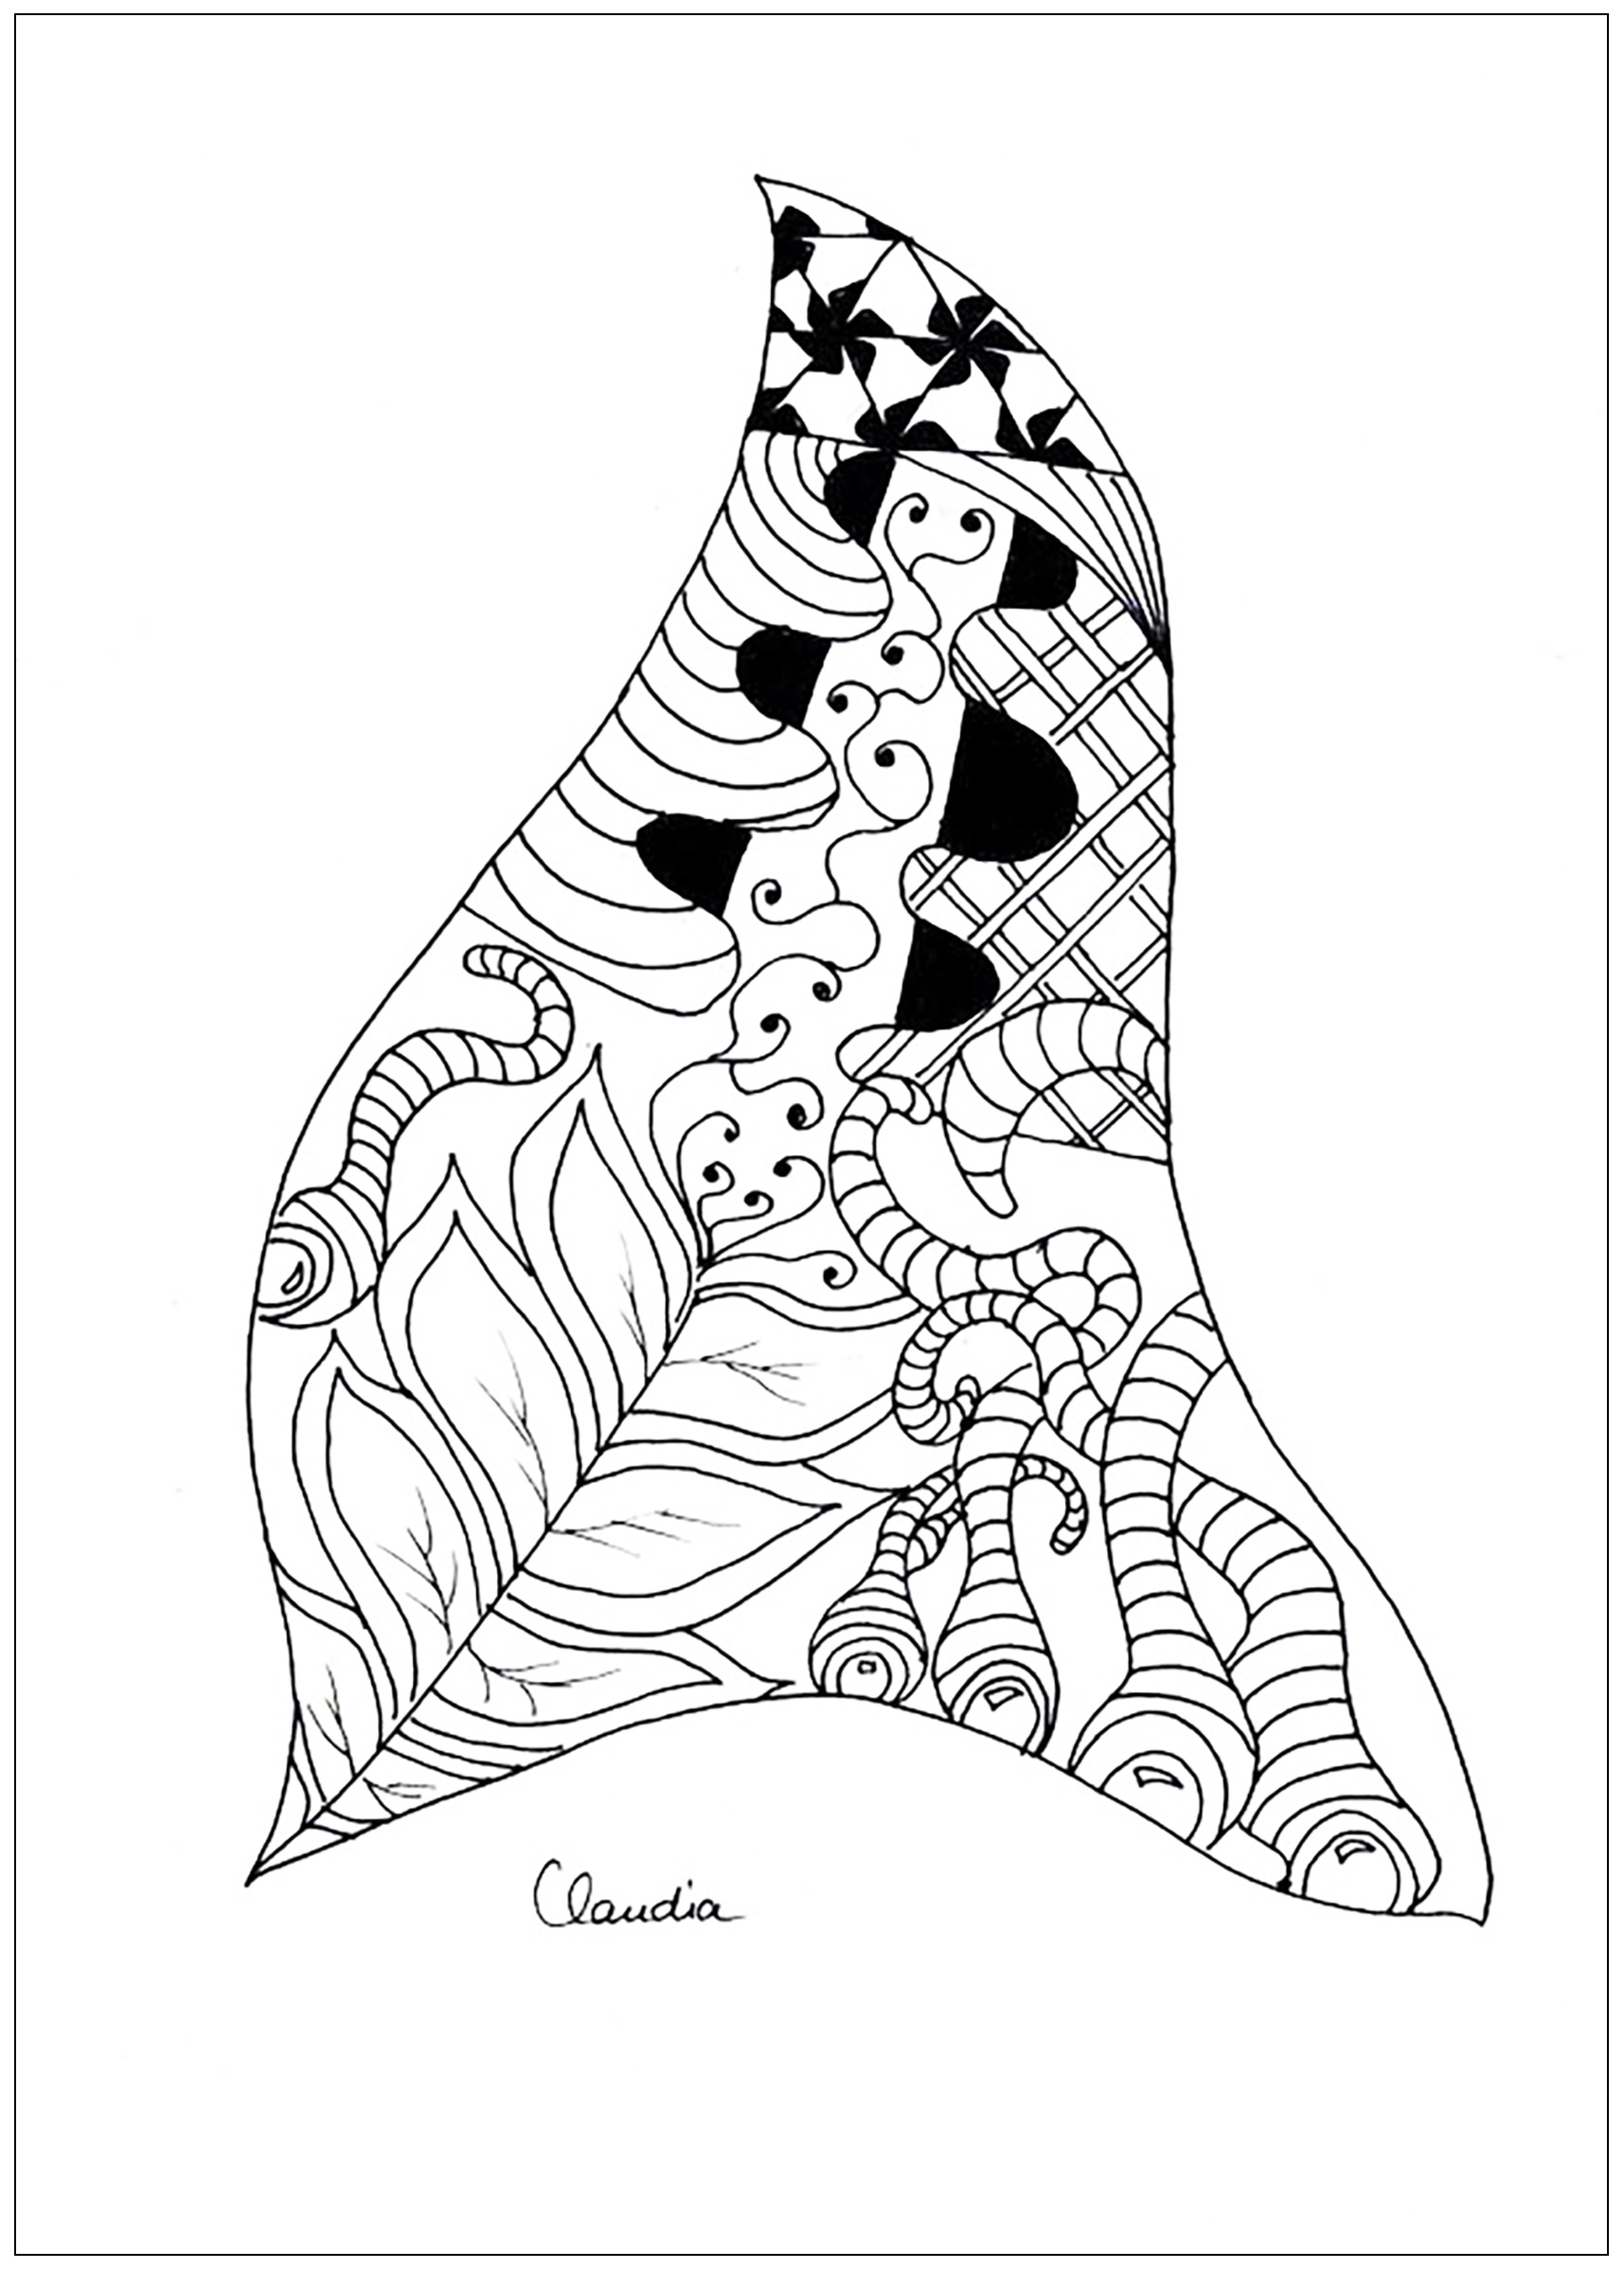 Colorear para adultos : Zentangle - 43, Artista : Claudia